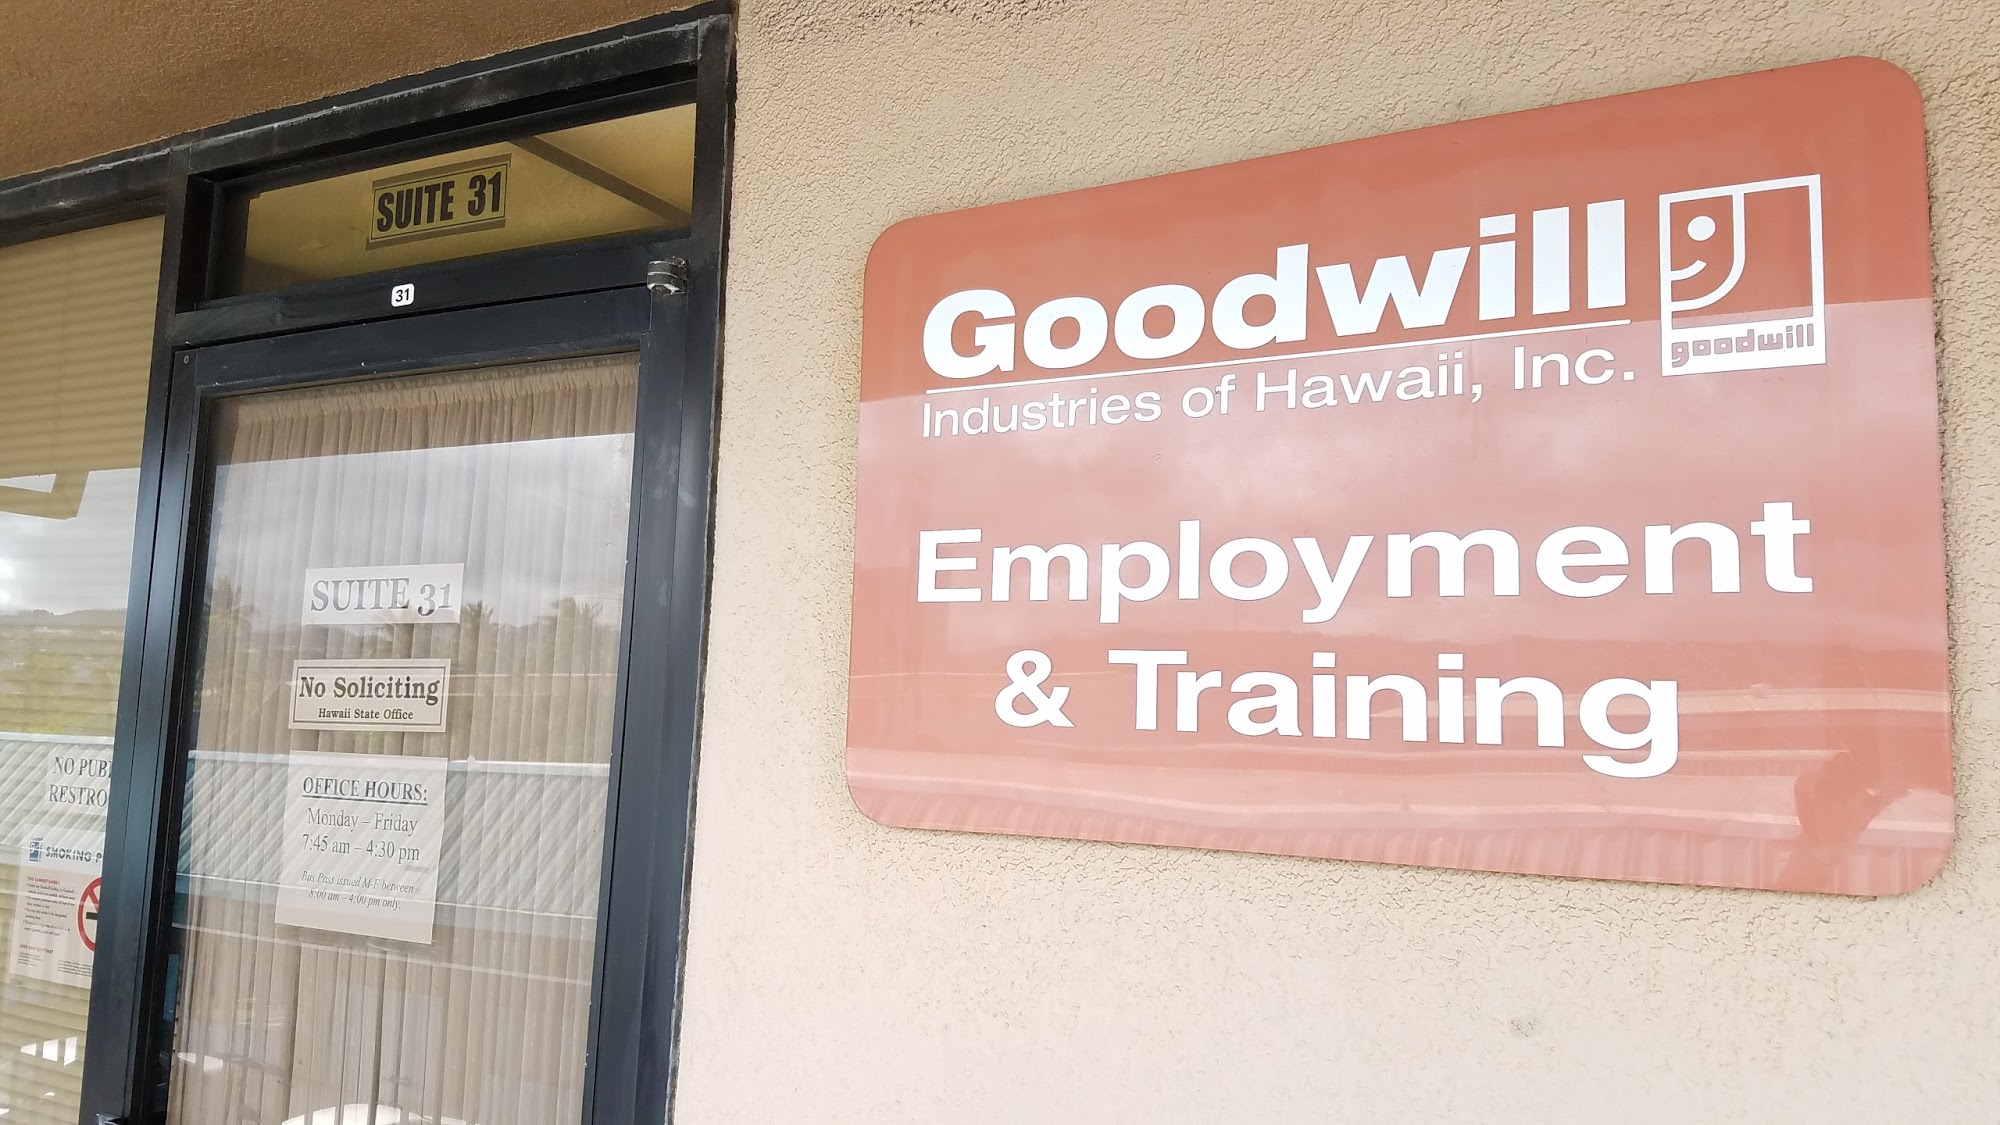 Goodwill Employment & Training